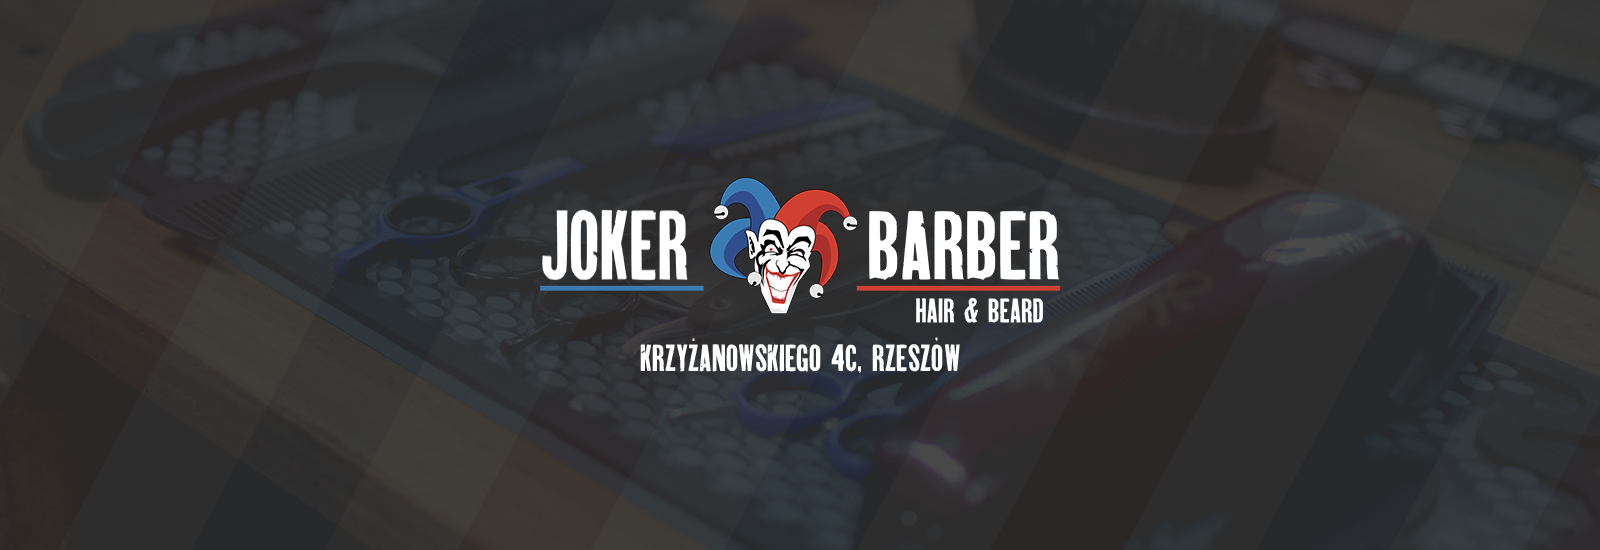 A Barber - Joker Barber Rzeszów, Rzeszów, bukka